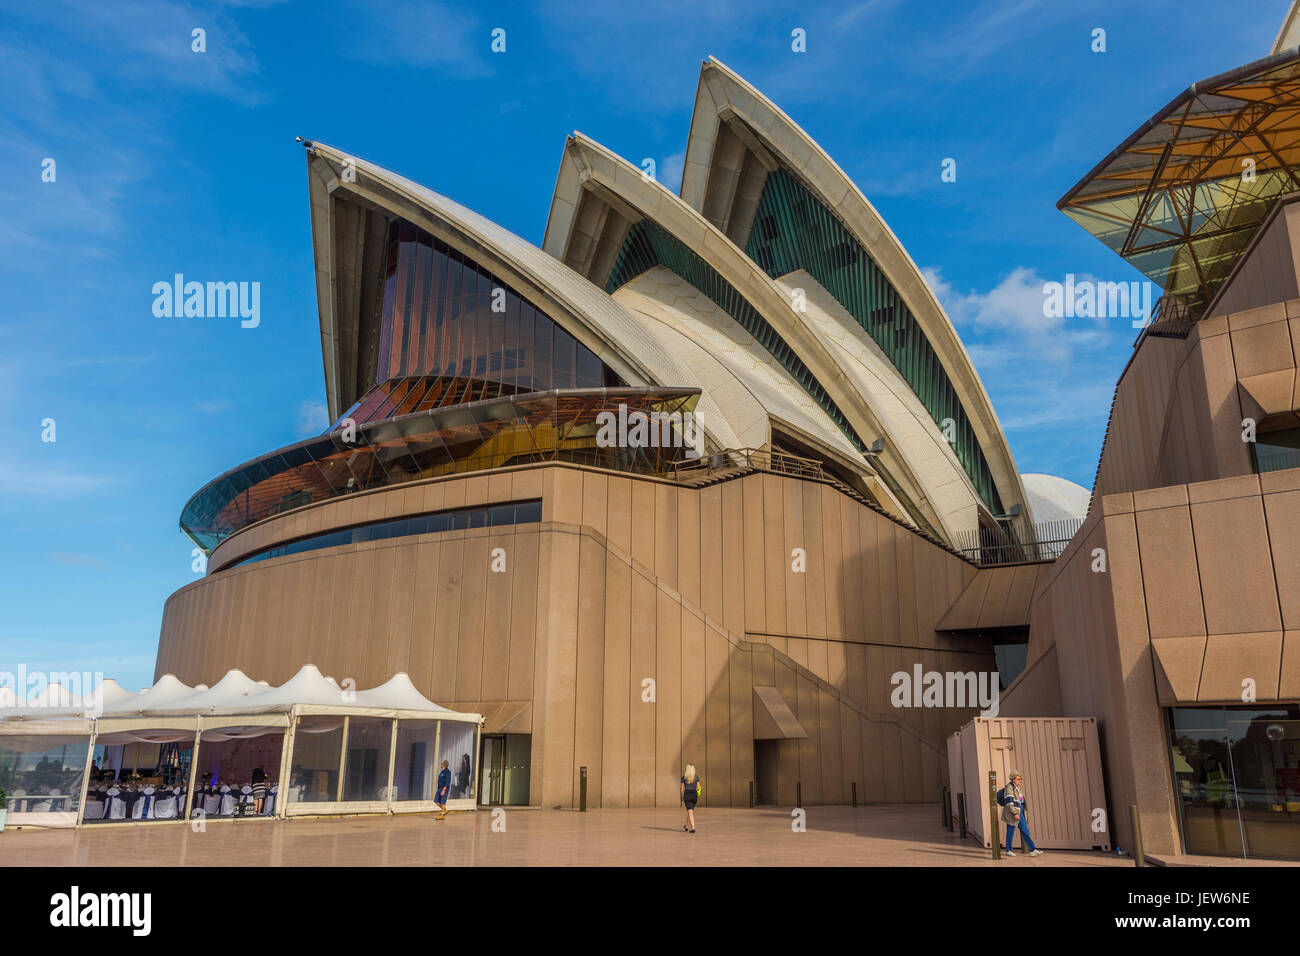 SYDNEY, Australia - 19 aprile: dettaglio della Sydney Opera House progettata dall'architetto danese Jørn Utzon è il famoso punto di riferimento di Sydney e uno di più riconosciuto Foto Stock